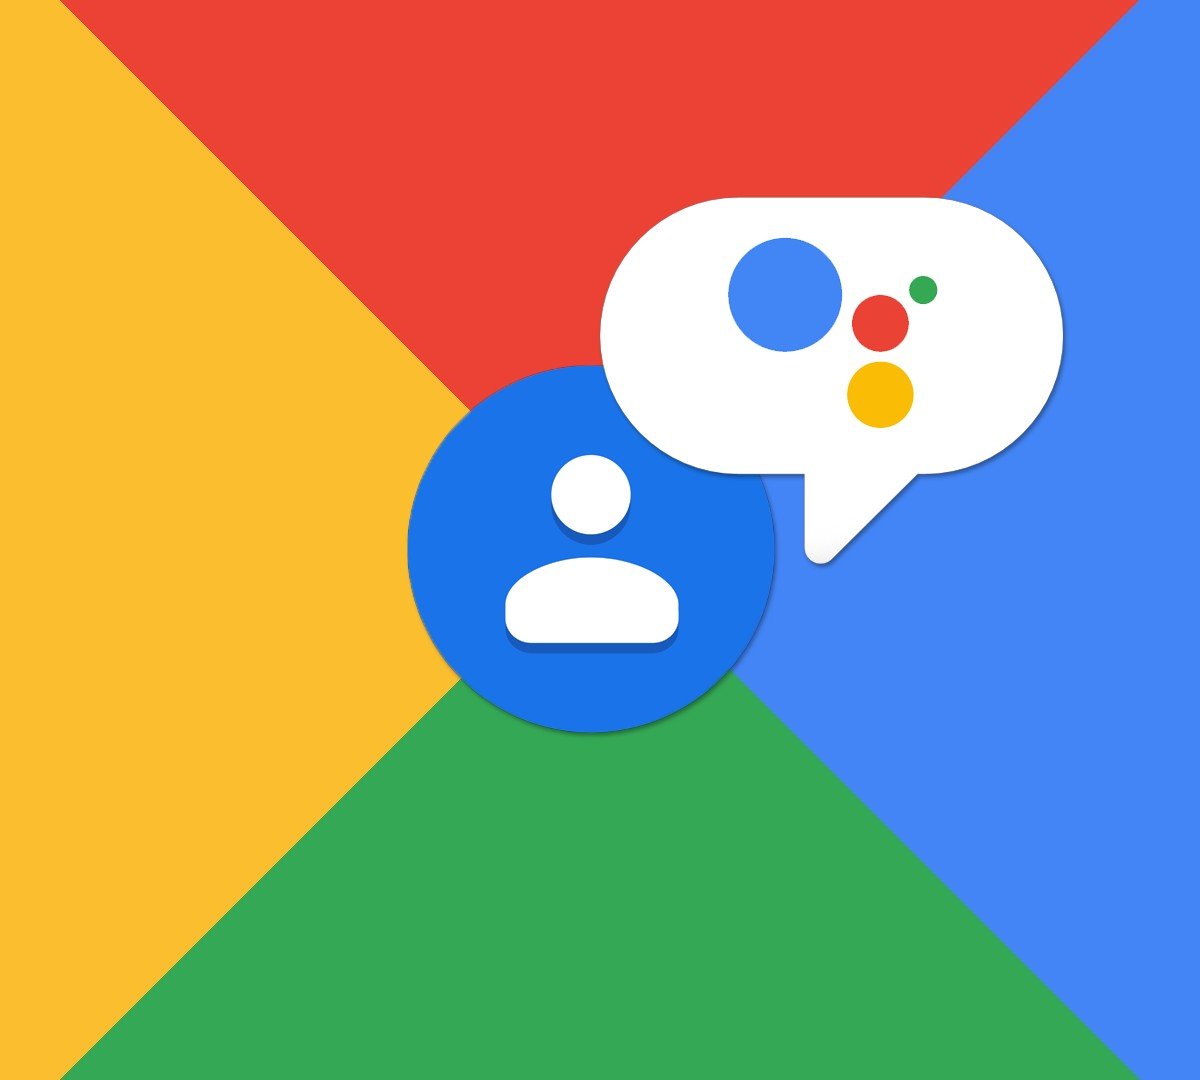 Google Takeout ganhou uma nova cara e também novas funções